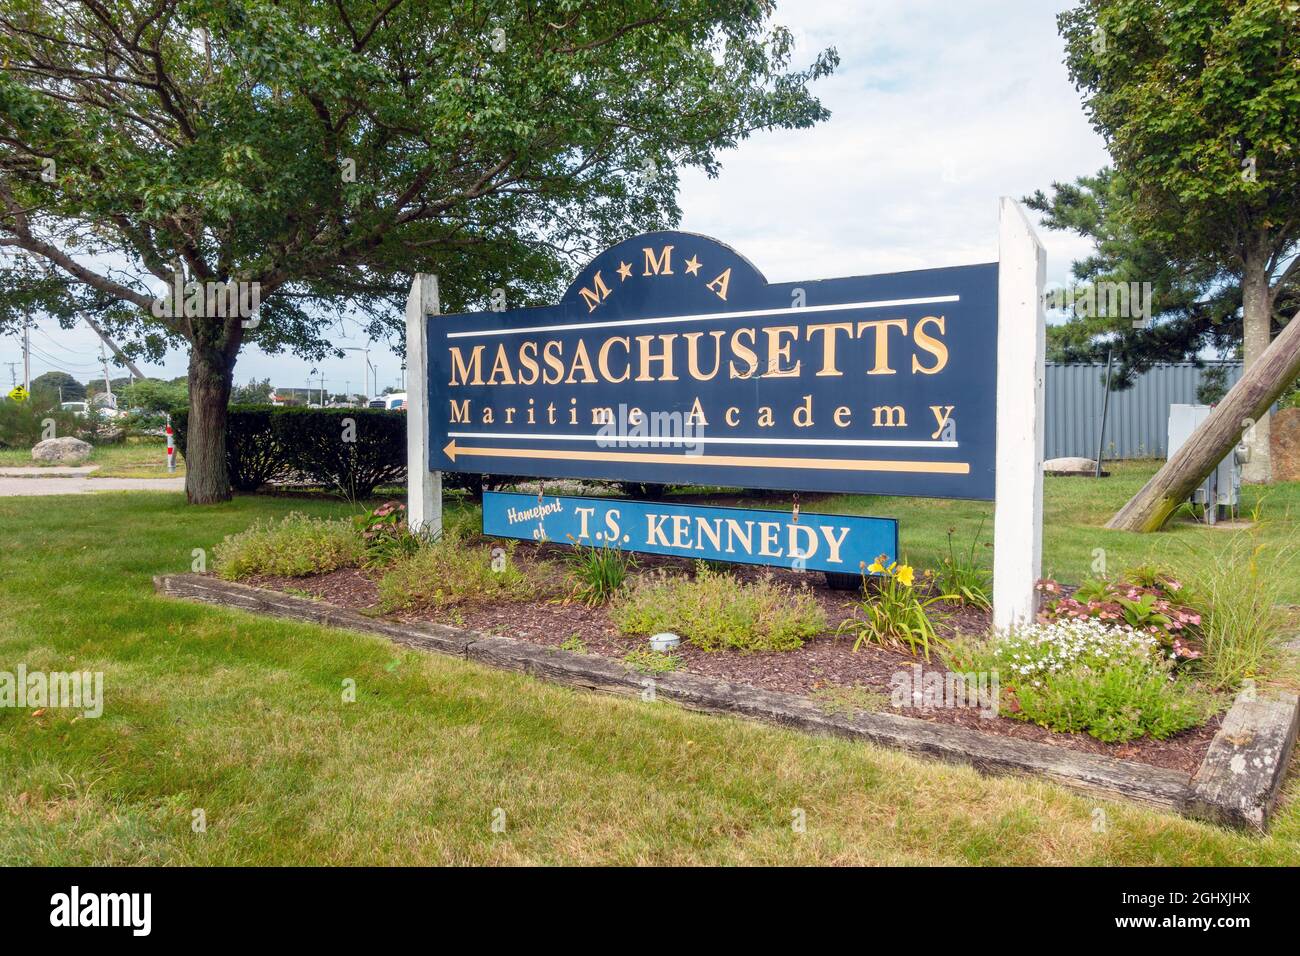 Massachusetts Maritime Academy conocida como el signo MMA en verano Foto de stock